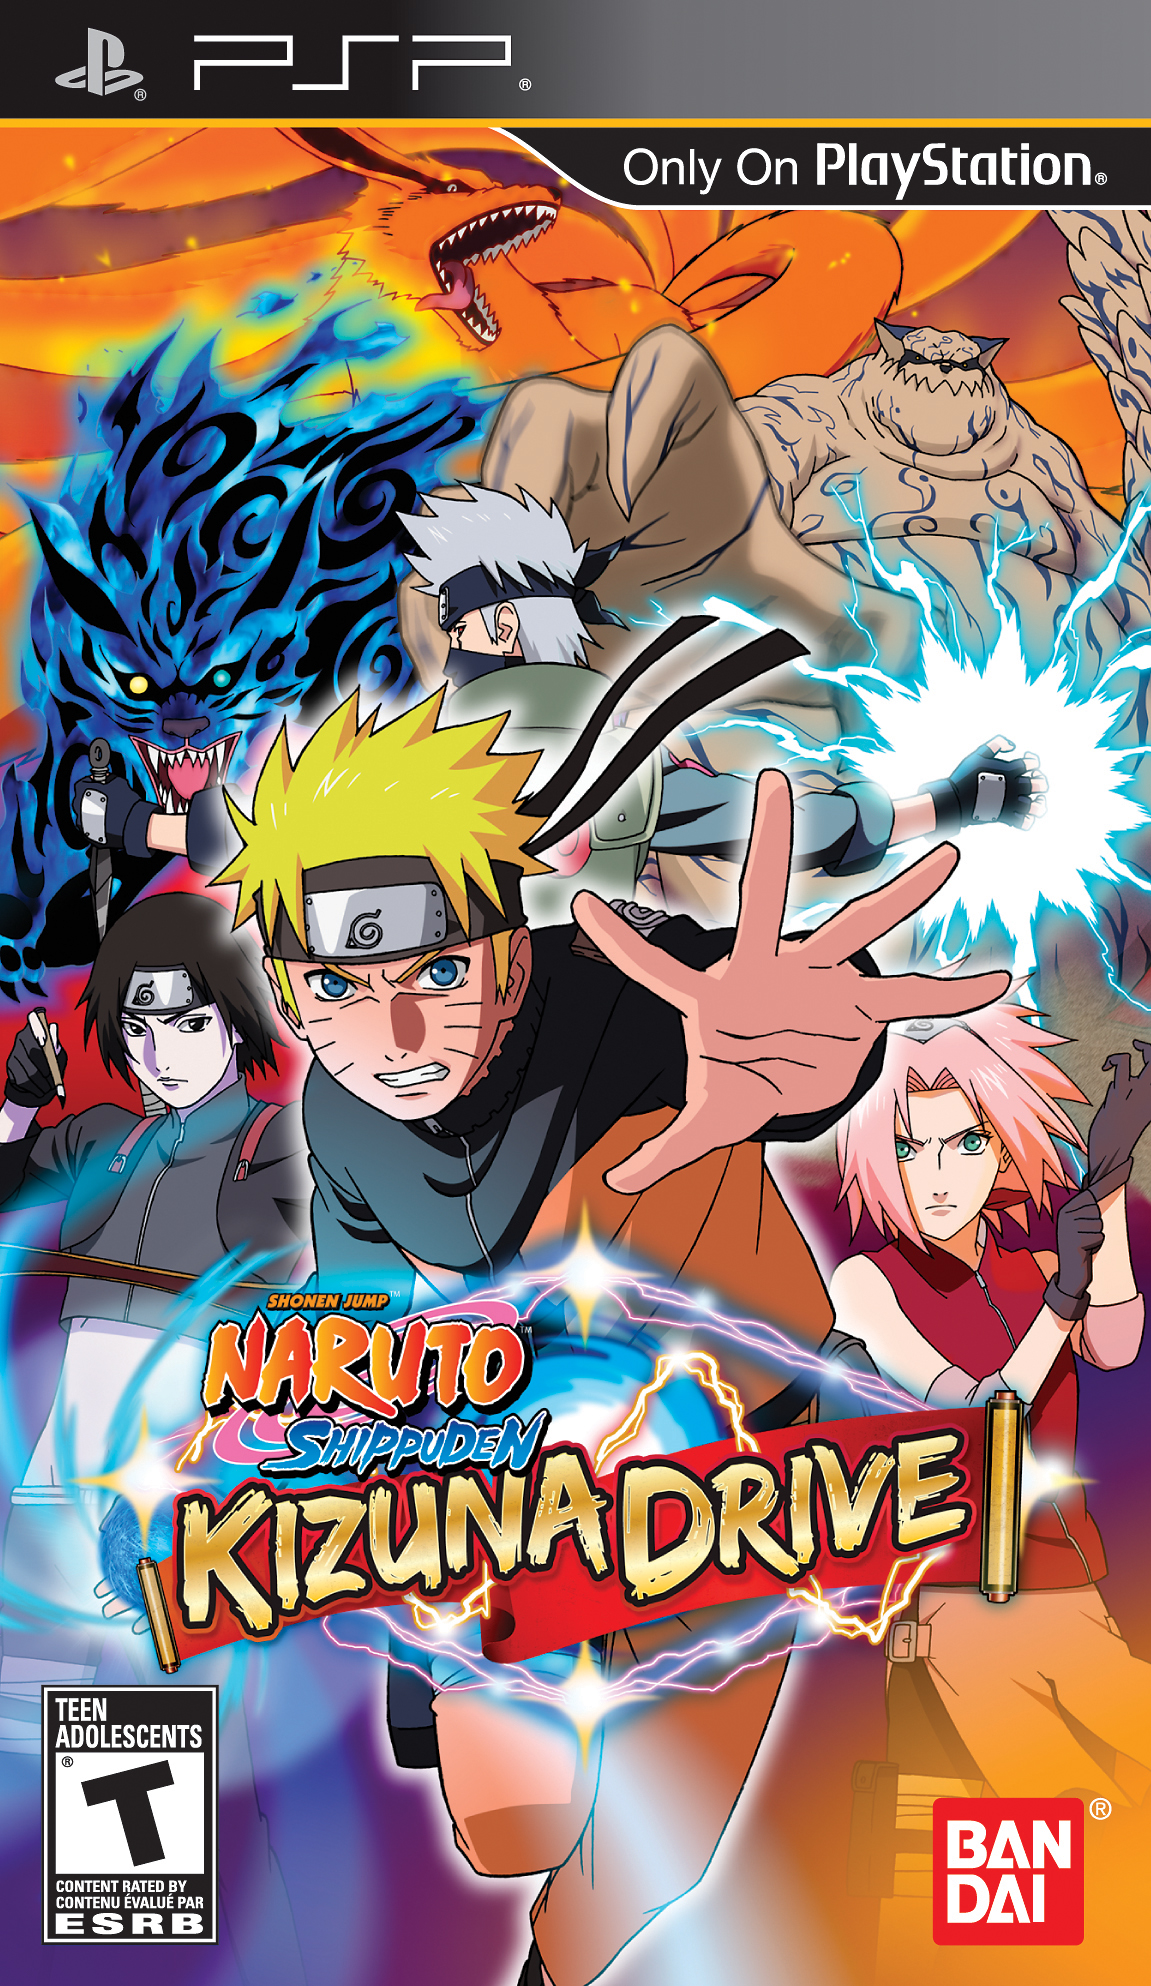 Naruto Shippden Kizuna Drive Narutopedia FANDOM Powered By Wikia